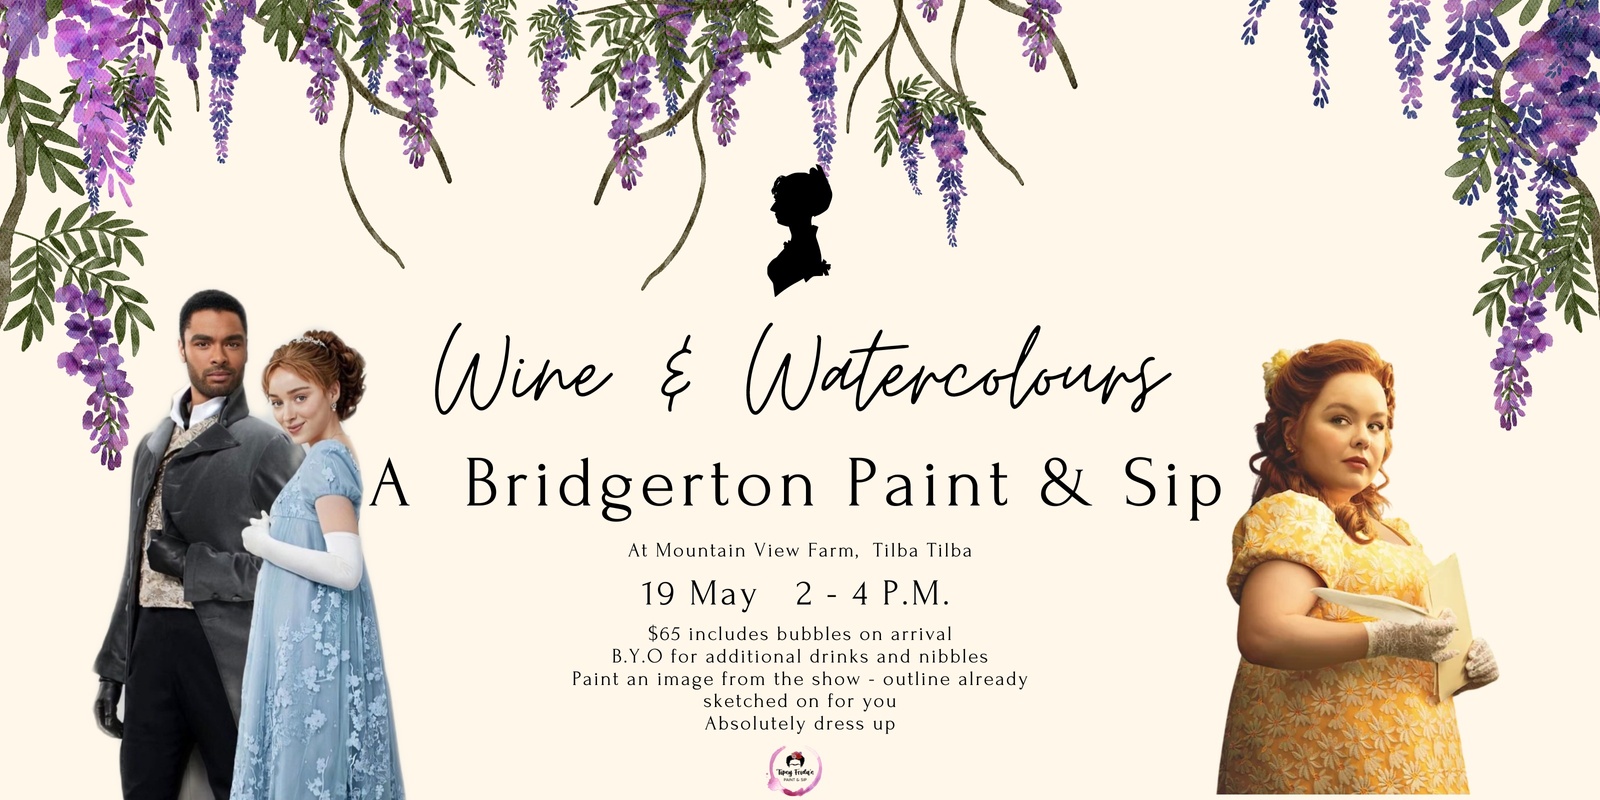 Banner image for Bridgerton Wine & Watercolours in Tilba Tilba